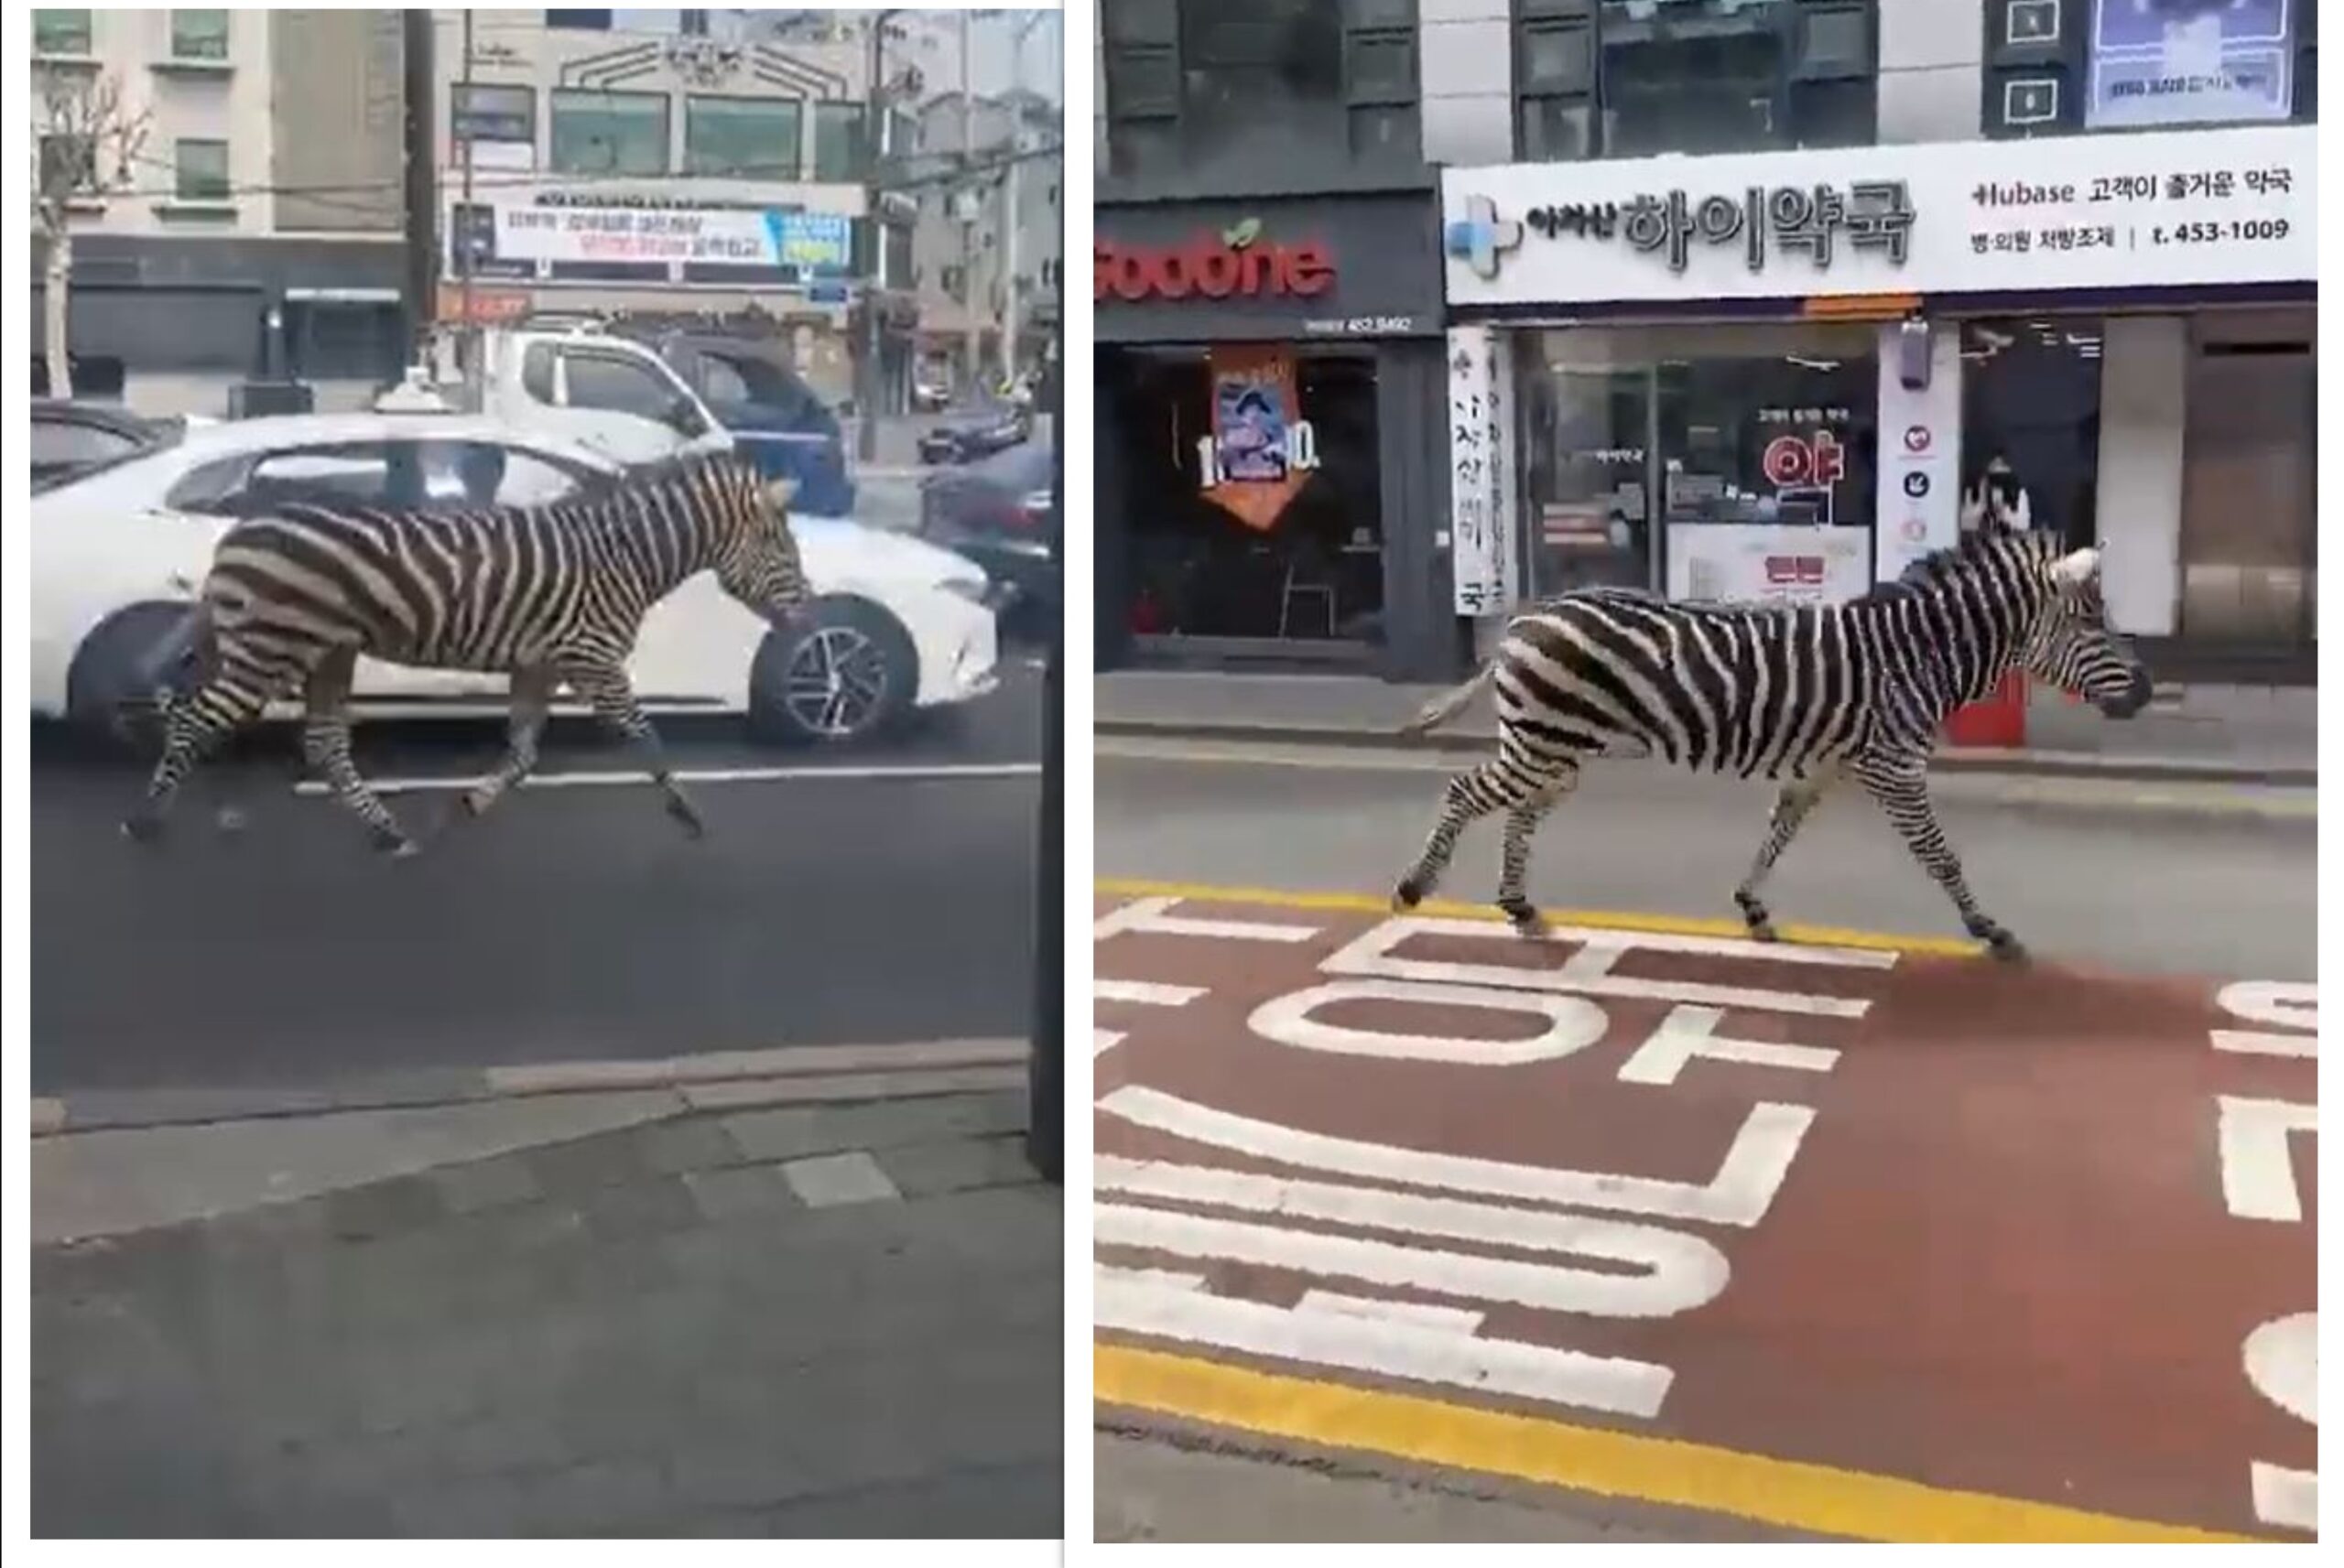 Ilyen sincs minden nap: elszabadult zebra sétálgatott Szöulban